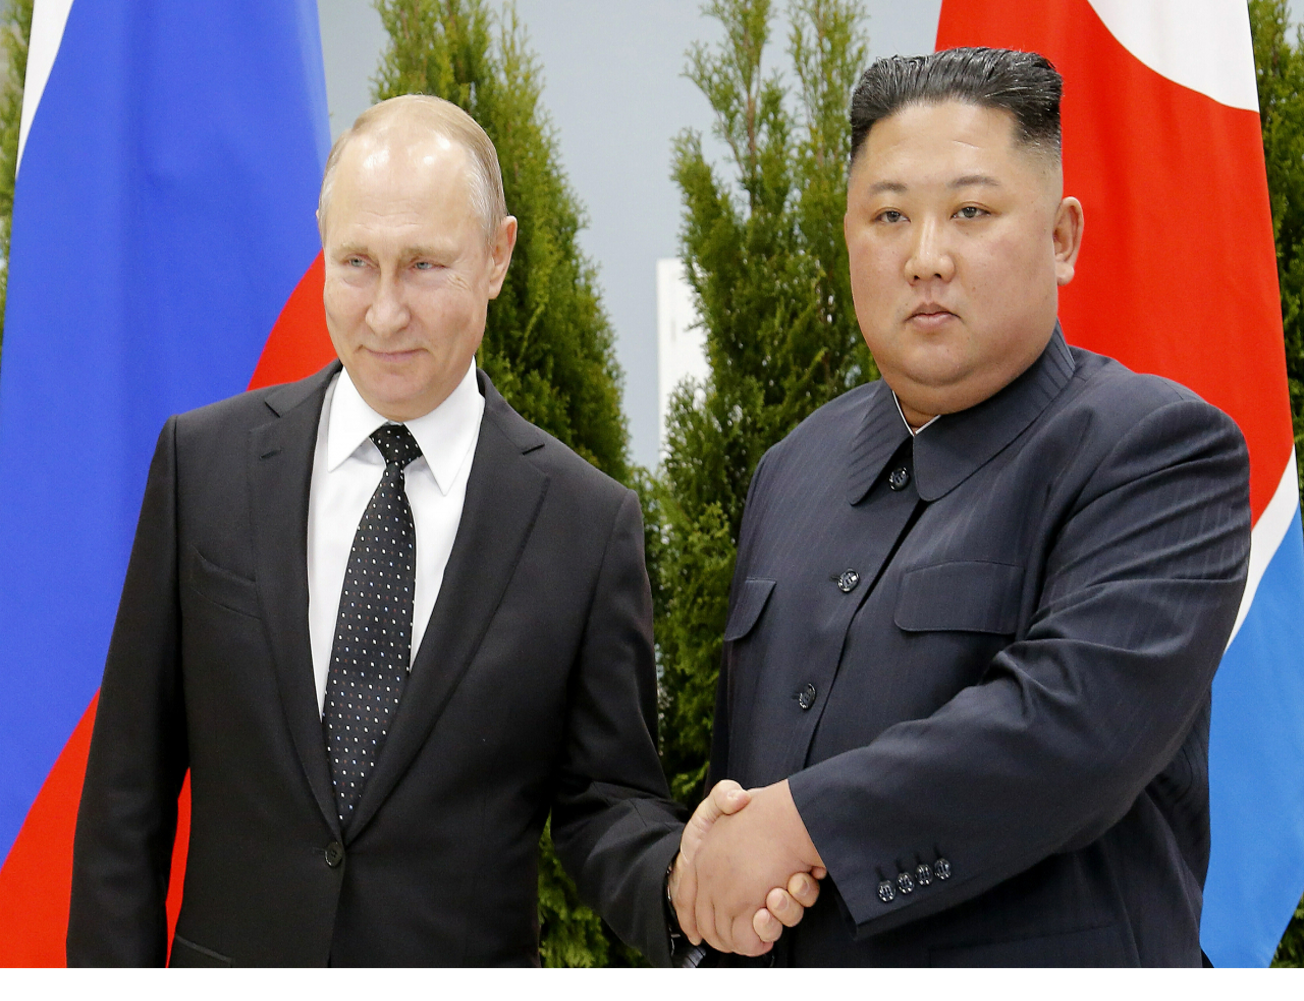 کانادا، روسیه و کره شمالی را به اتهام انتقال موشک محکوم می‌کنند